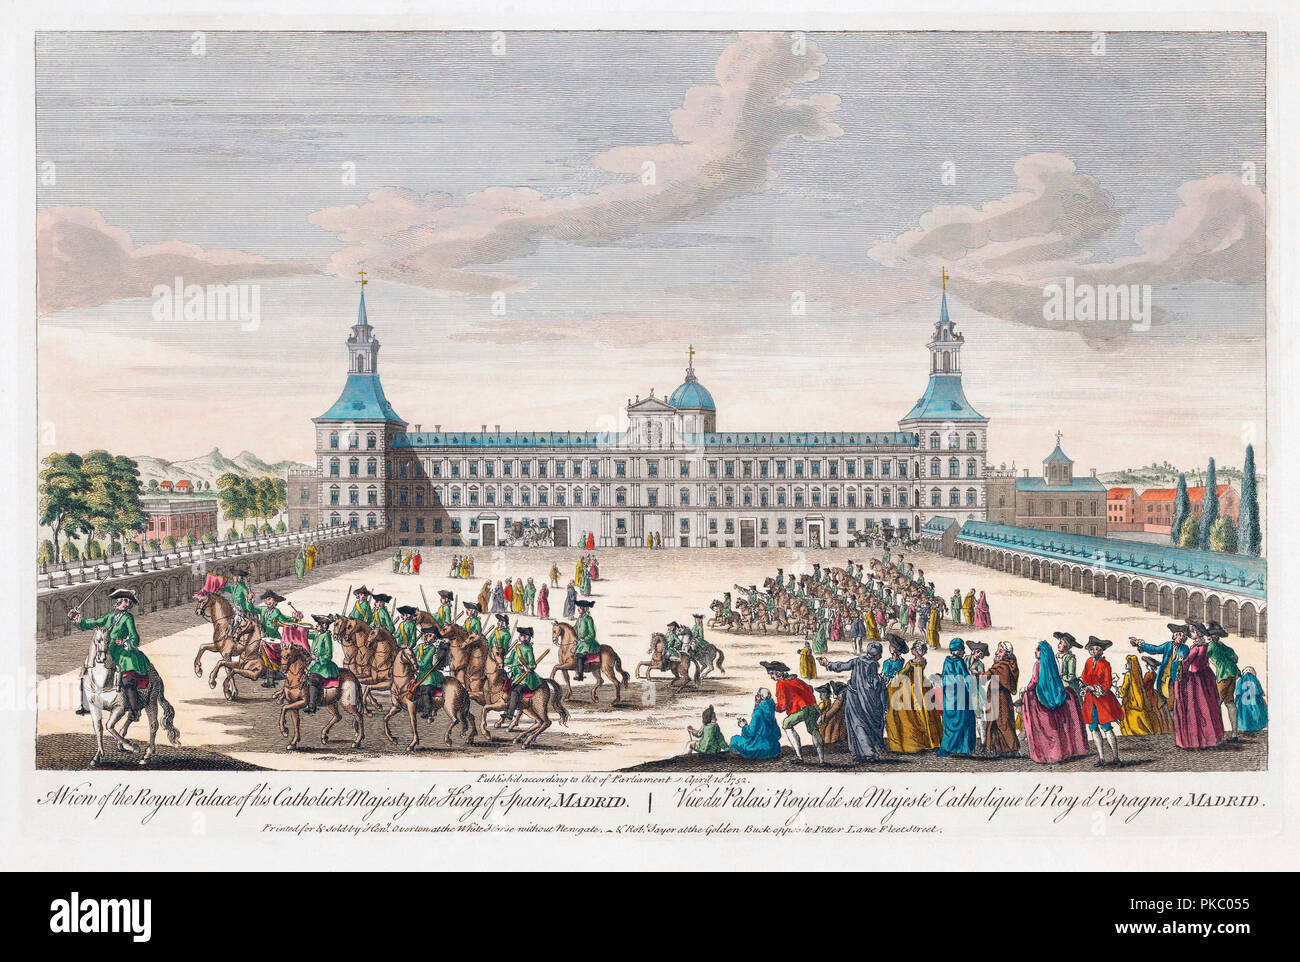 Una vista del palacio real de su Majestad Católica el Rey de España, Madrid. Grabado coloreado a mano con fecha de 1752. Foto de stock